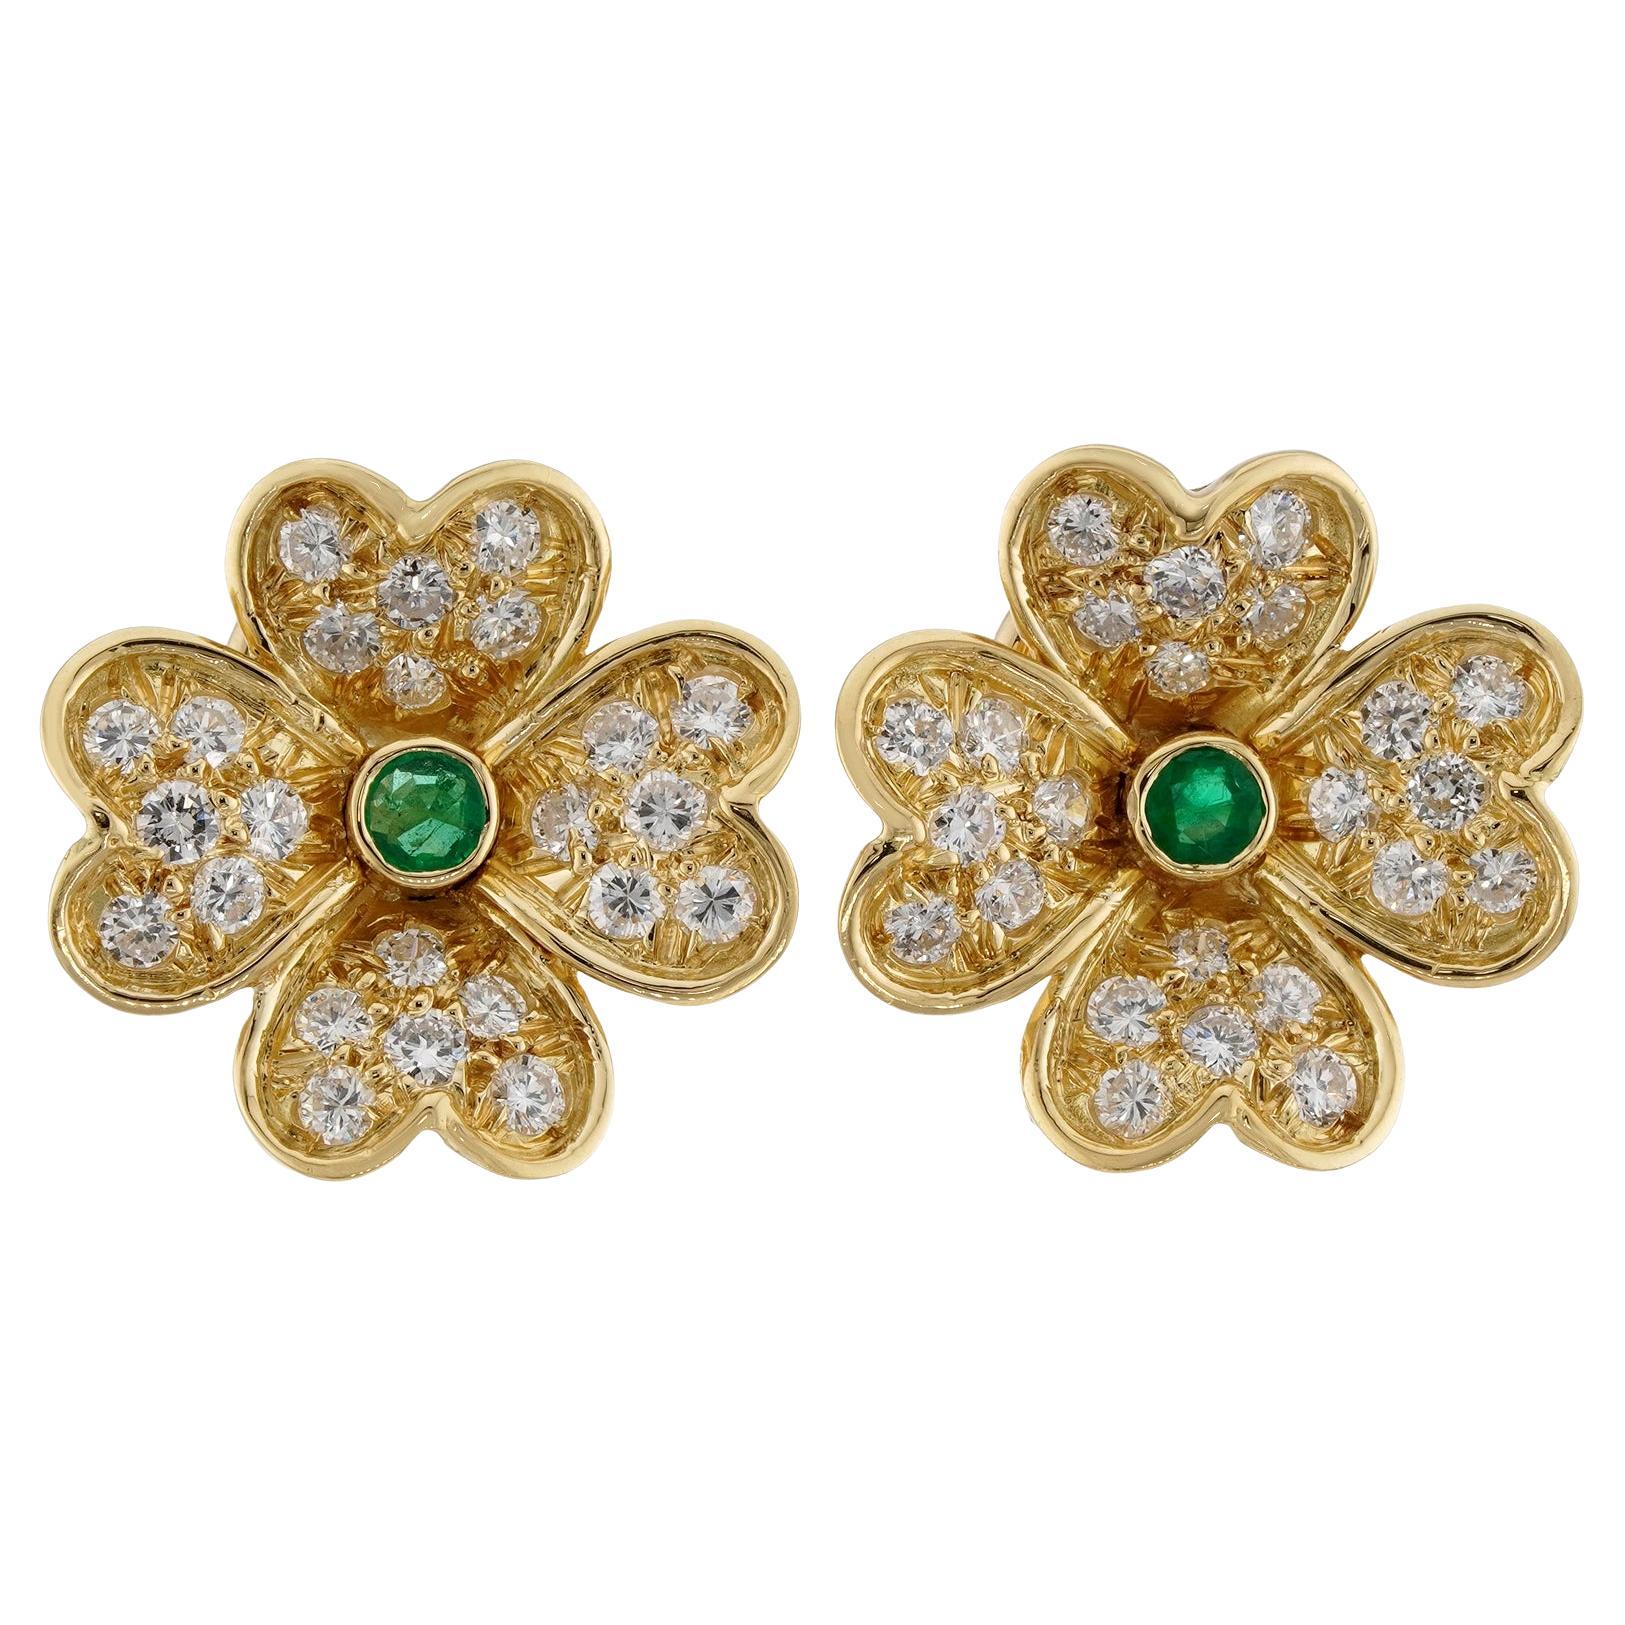 Van Cleef & Arpels Frivole, petites boucles d'oreilles en or jaune 18 carats avec diamants et émeraudes